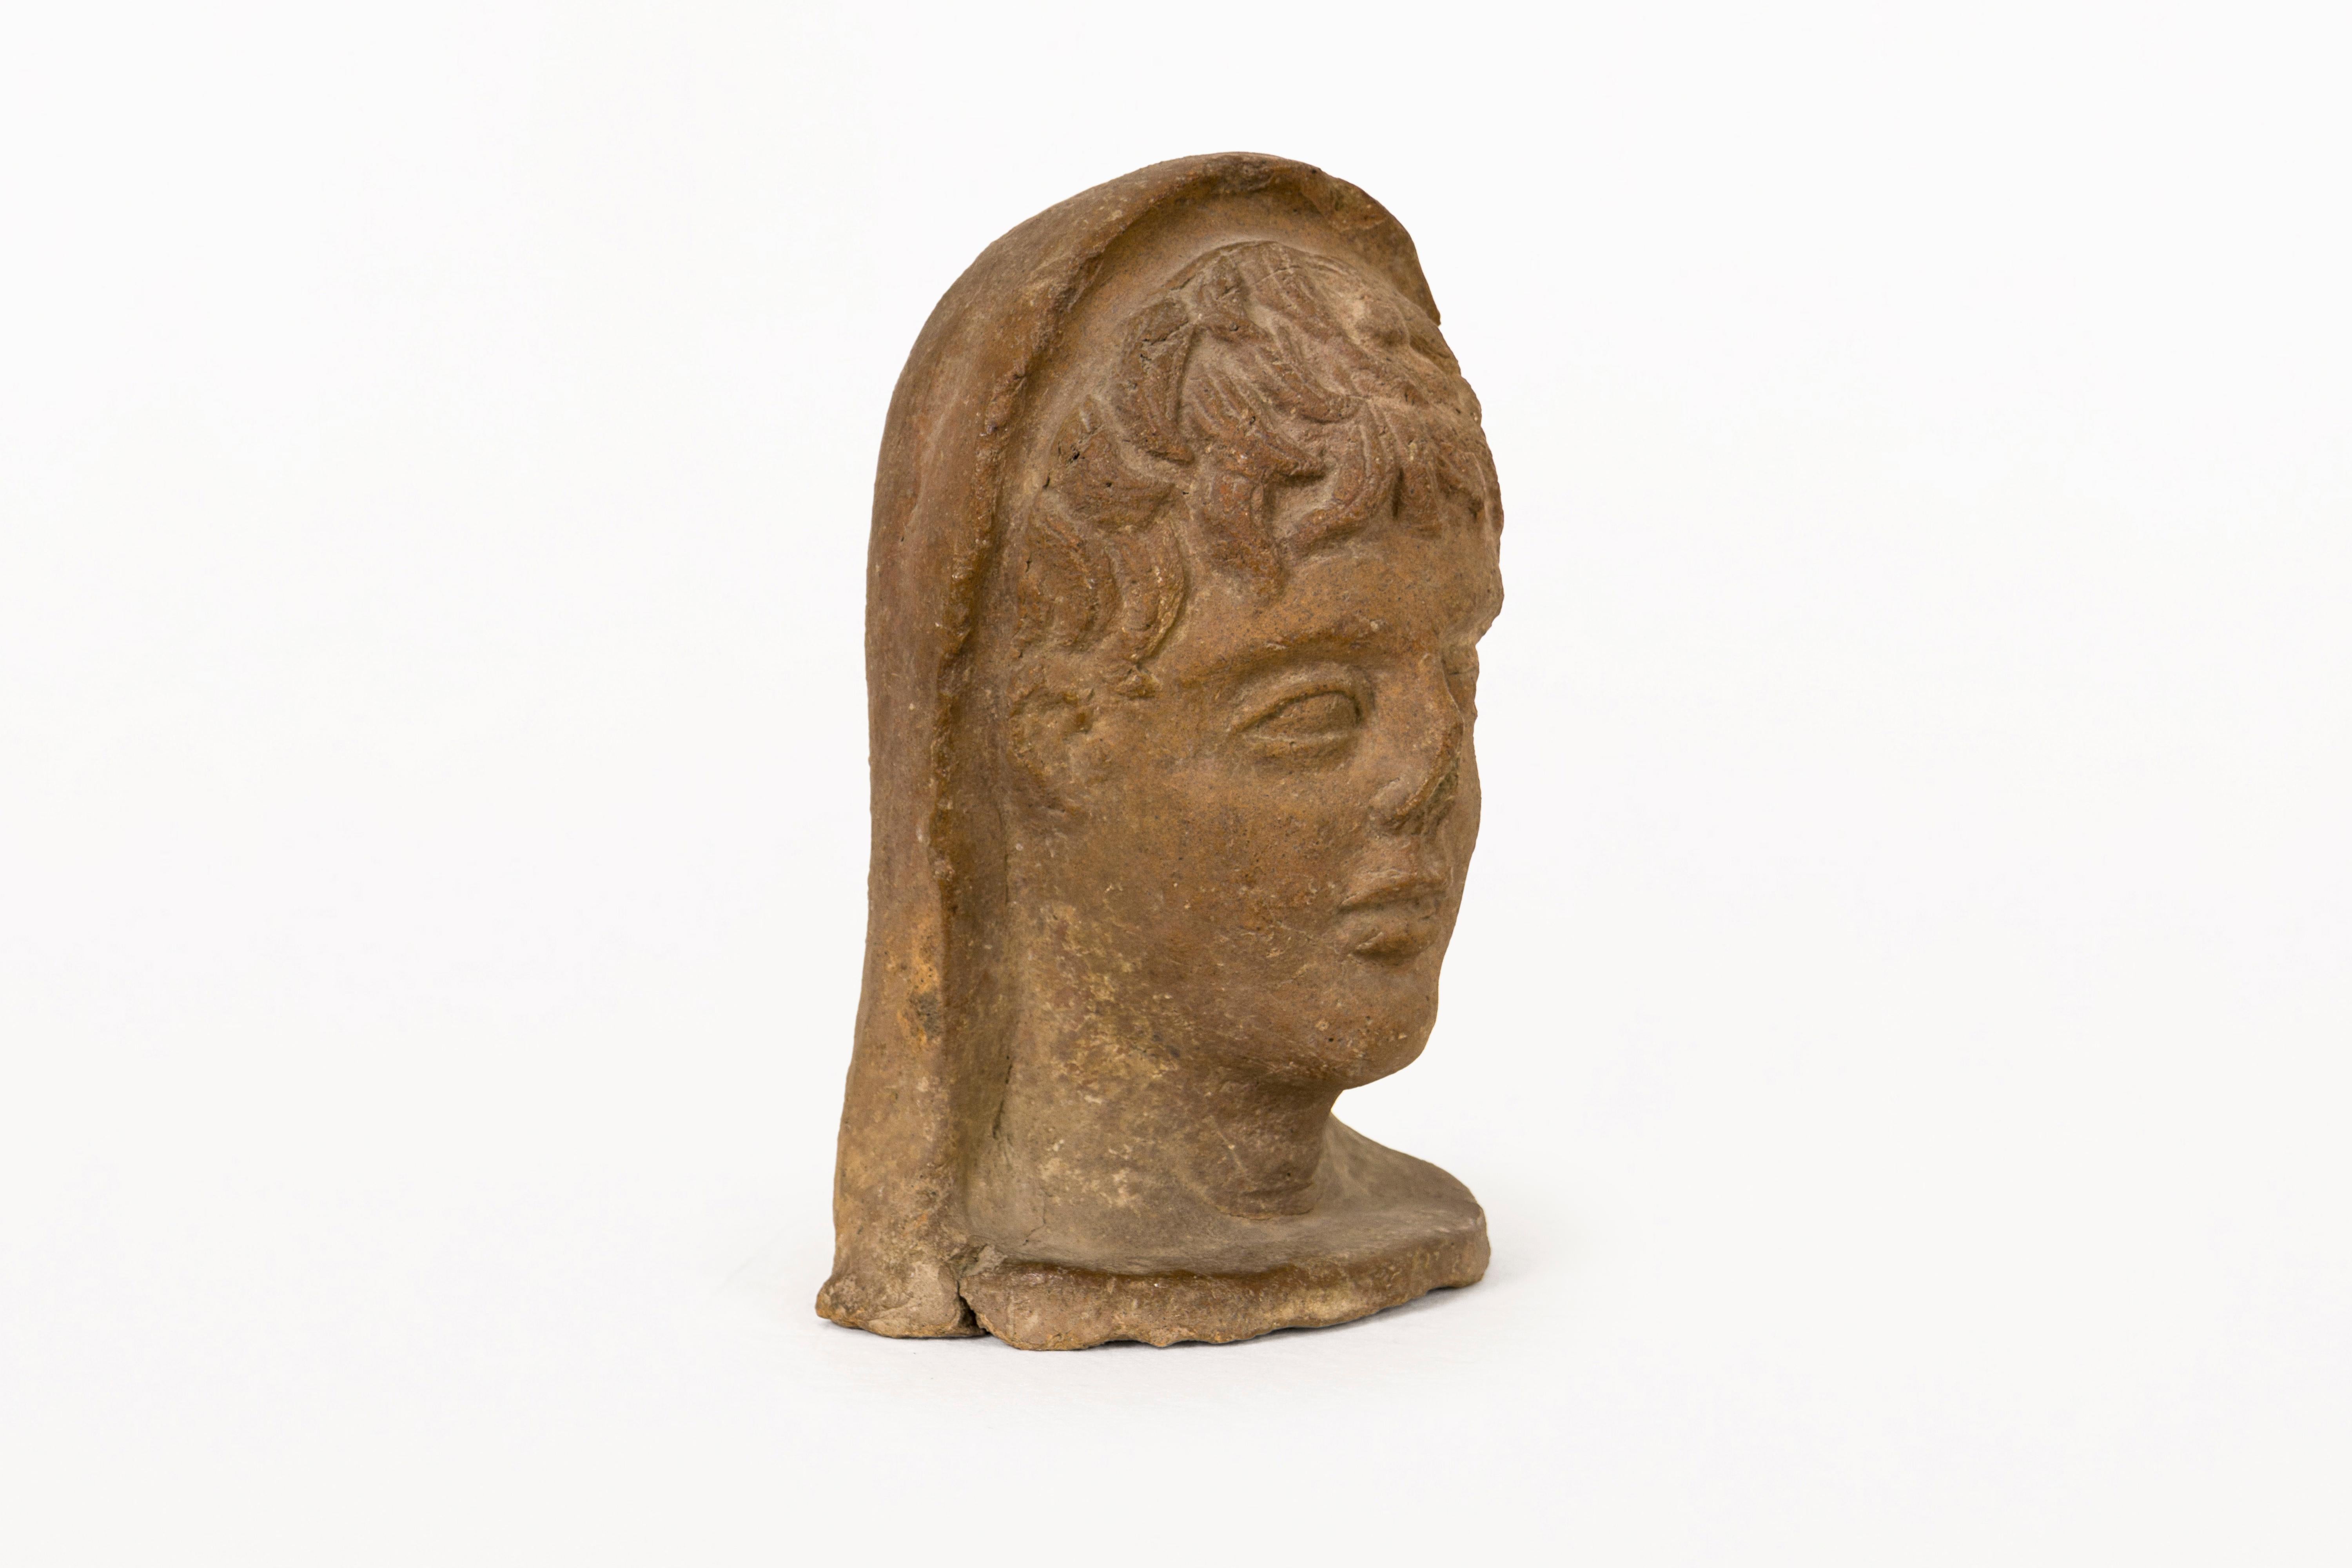 BESCHREIBUNG:  Etruskische Skulptur Kopf aus Terrakotta, die Kunst stellt einen jungen Mann aus dem 4. Es ist ein sehr dekoratives Stück und der Erhaltungszustand ist gut. Es hat ein Thermolumineszenz-Dokument, das in einem Labor in Marseille